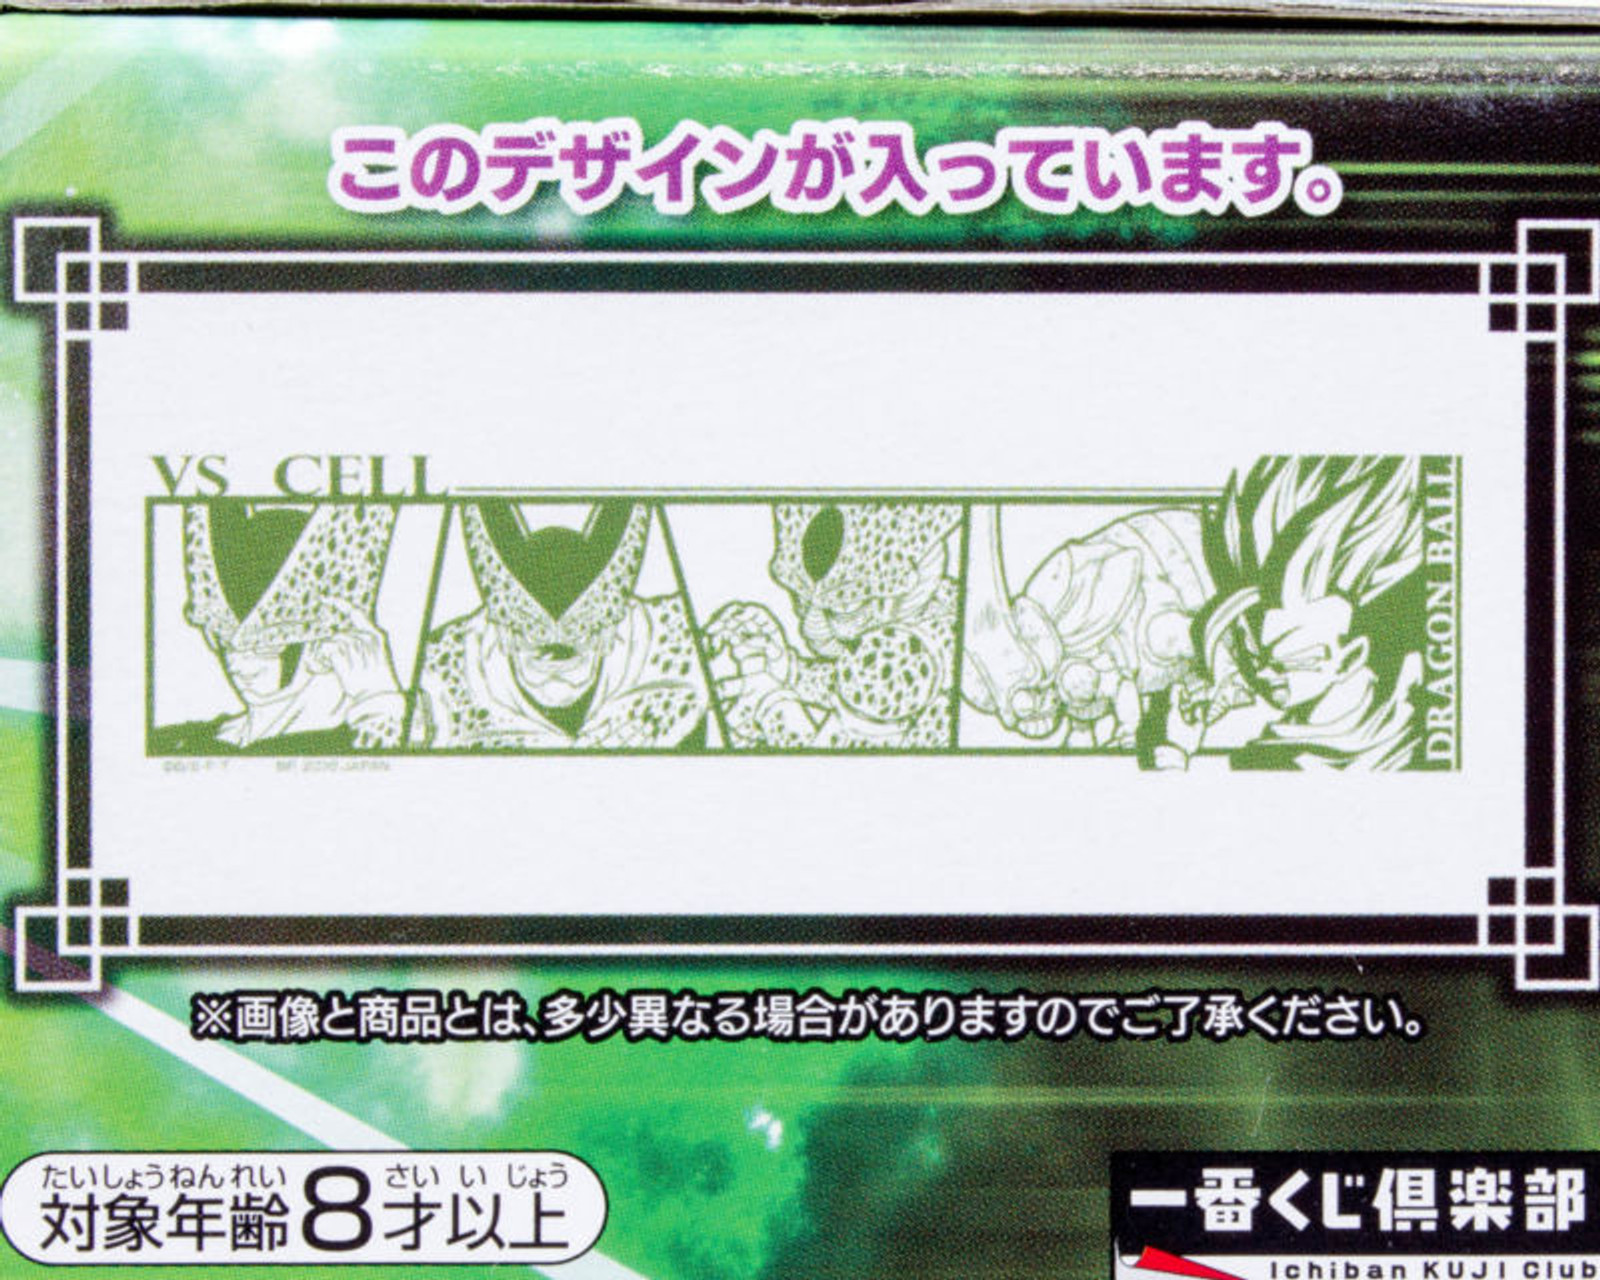 Dragon Ball Z Saikyo Rock Glass Super Rival vs. Cell Banpresto JAPAN ANIME